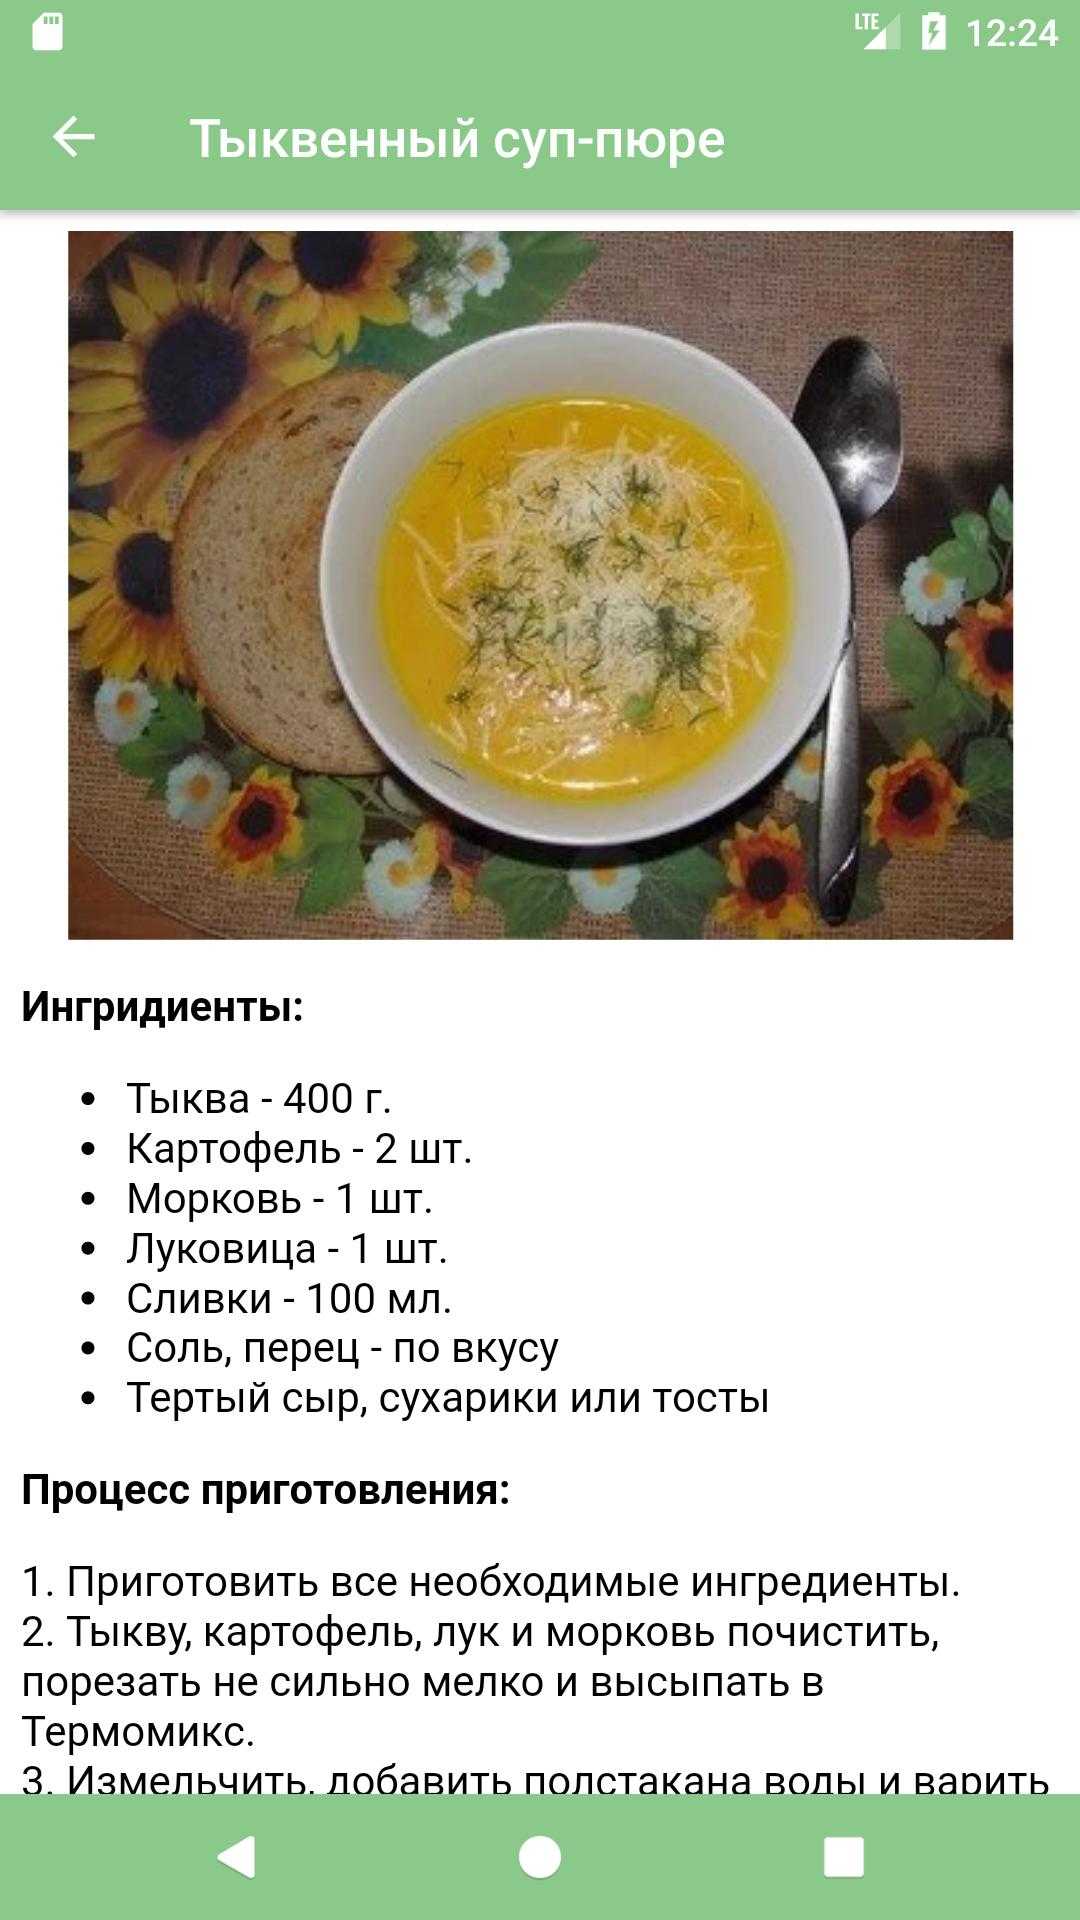 Суп гречневый – от русских и иностранных кулинаров: рецепт с фото и видео